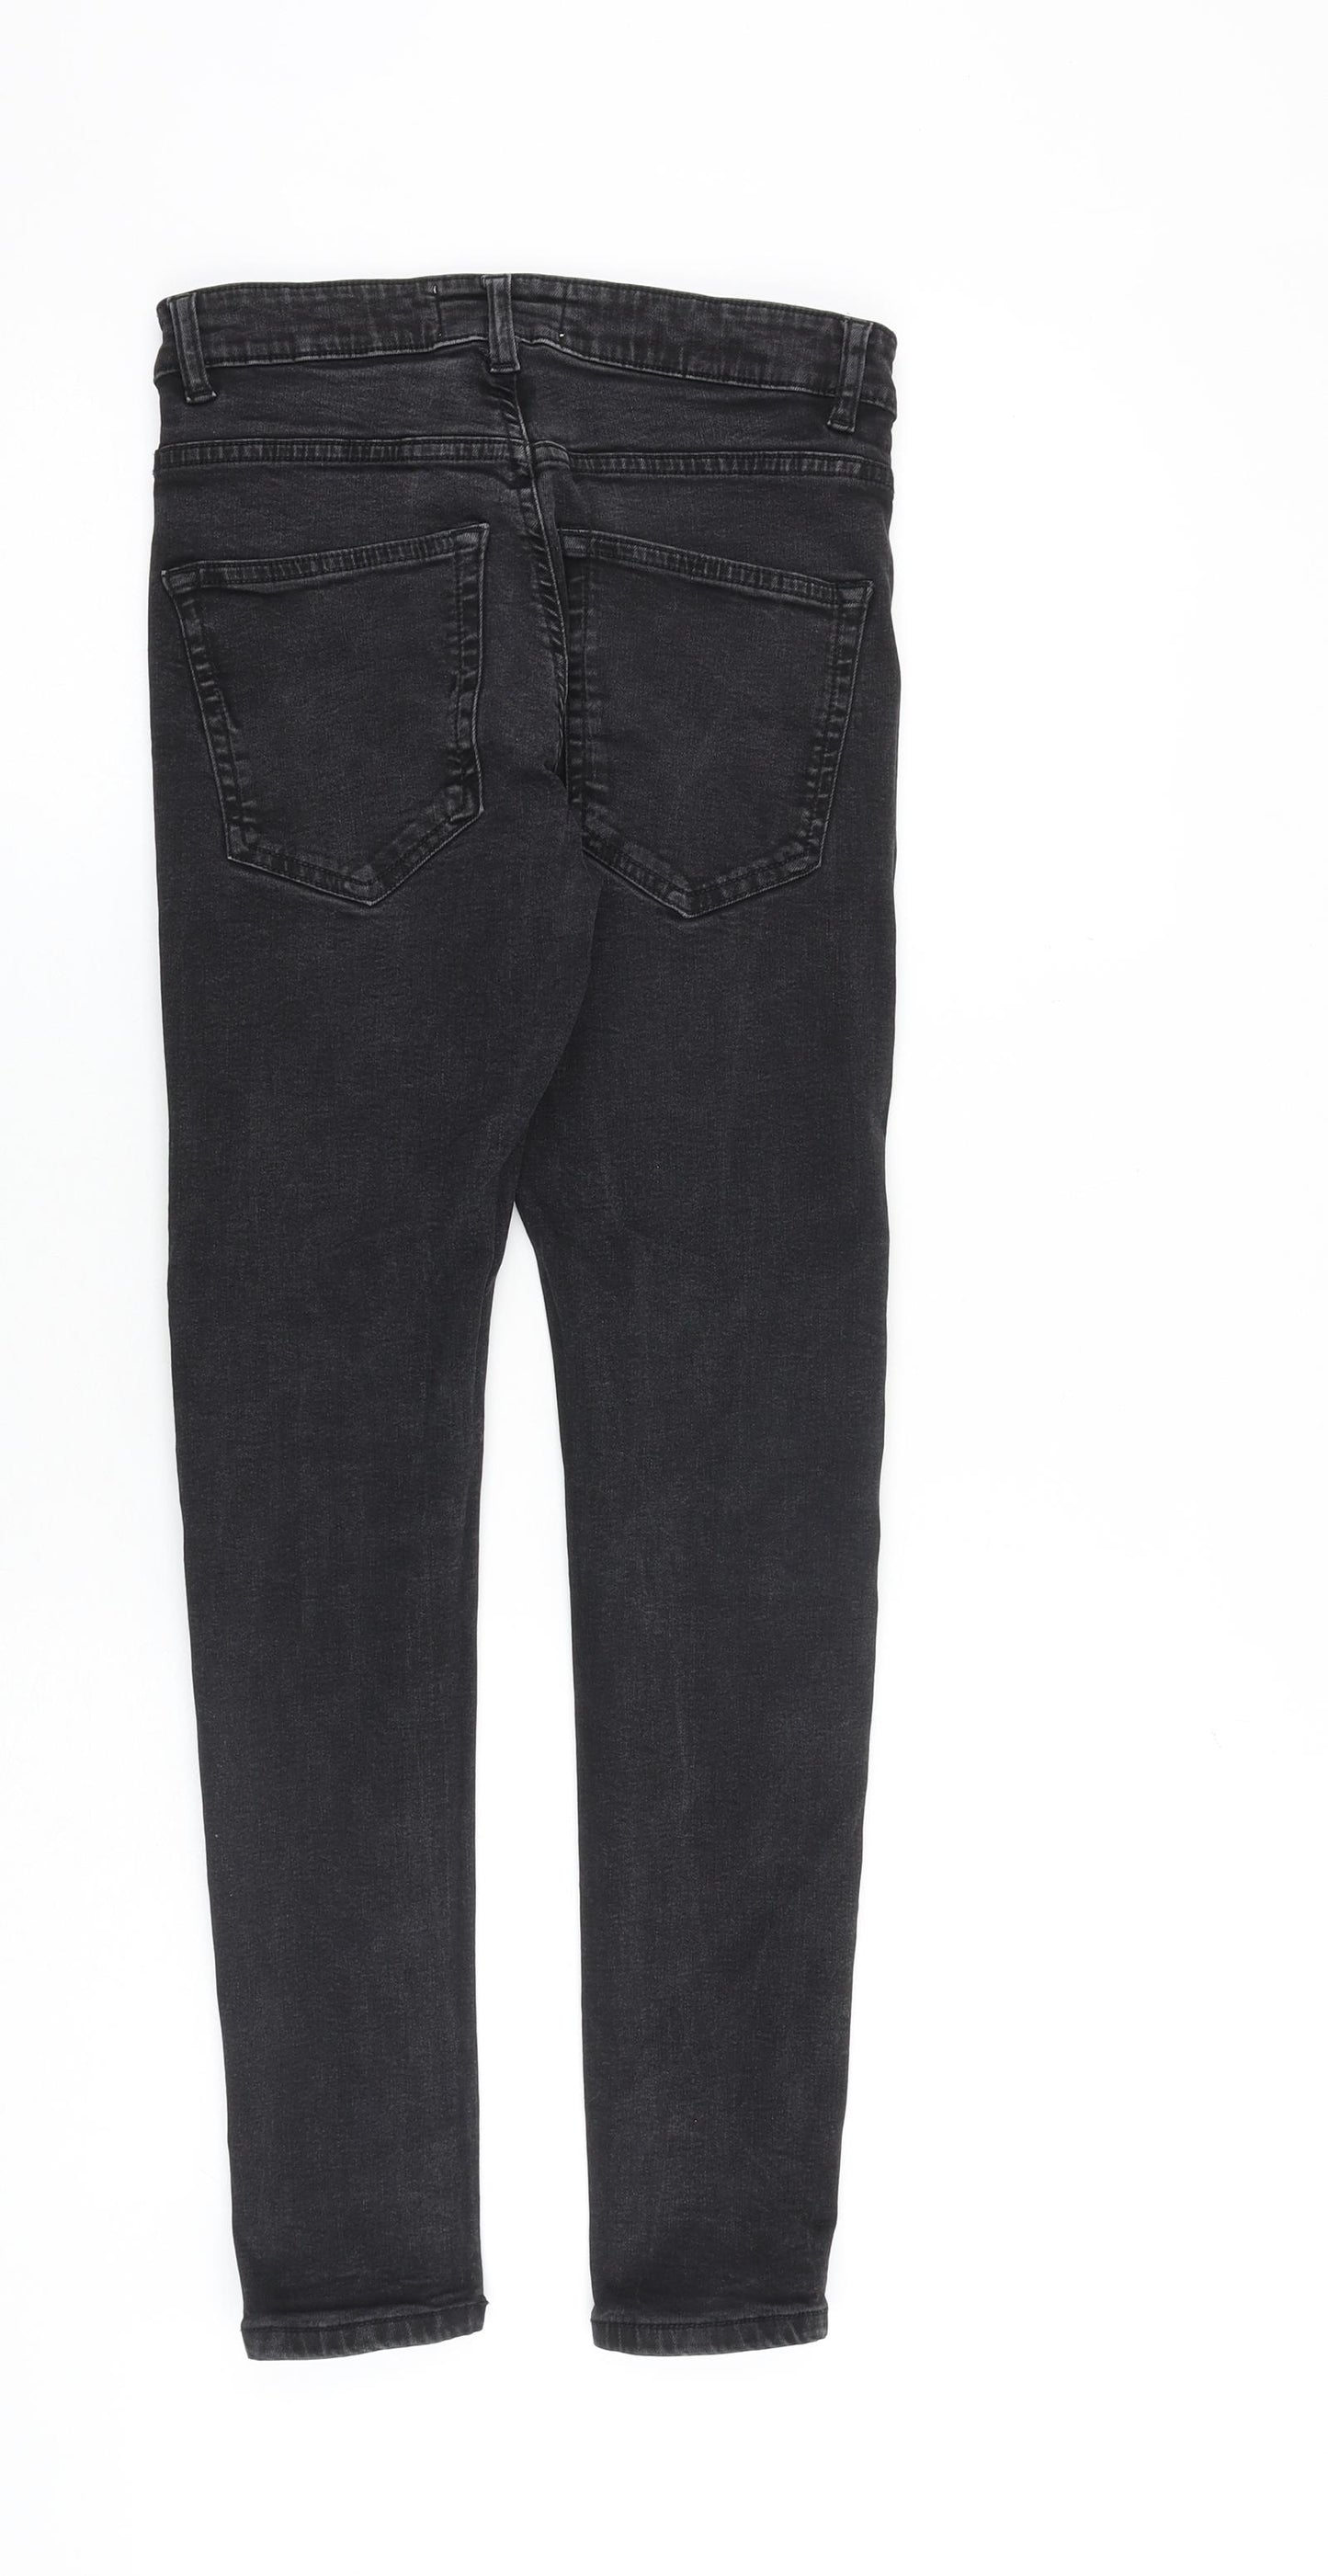 Easy Mens Black Cotton Skinny Jeans Size 28 in L30 in Extra-Slim Zip